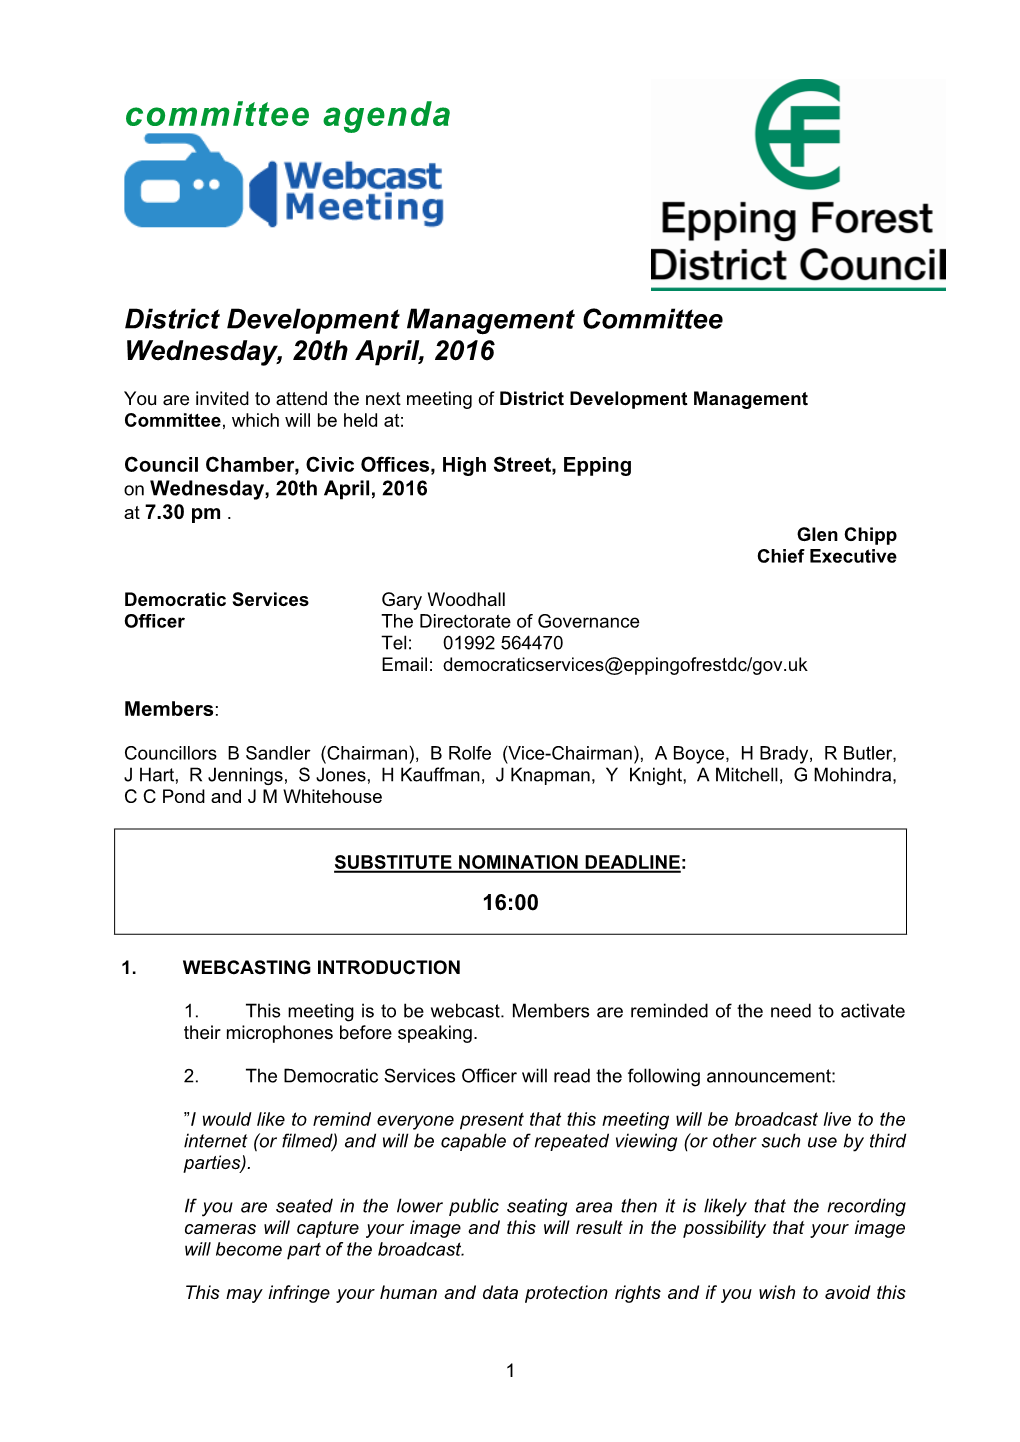 (Public Pack)Agenda Document for District Development Management